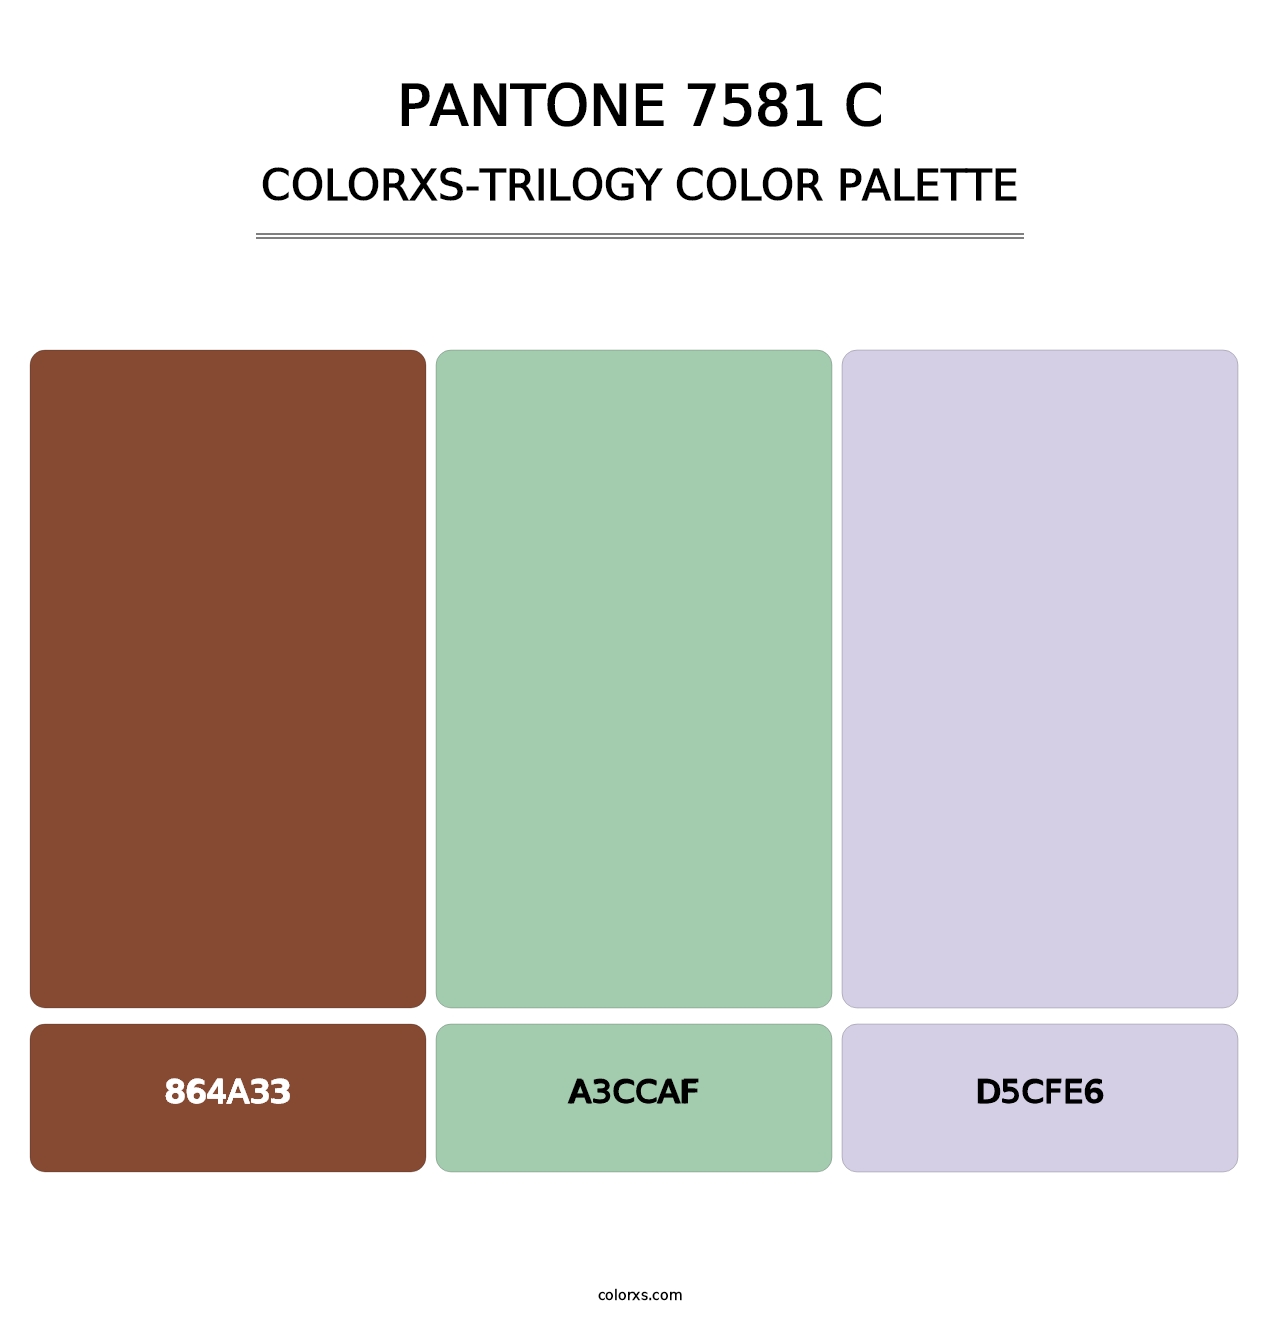 PANTONE 7581 C - Colorxs Trilogy Palette